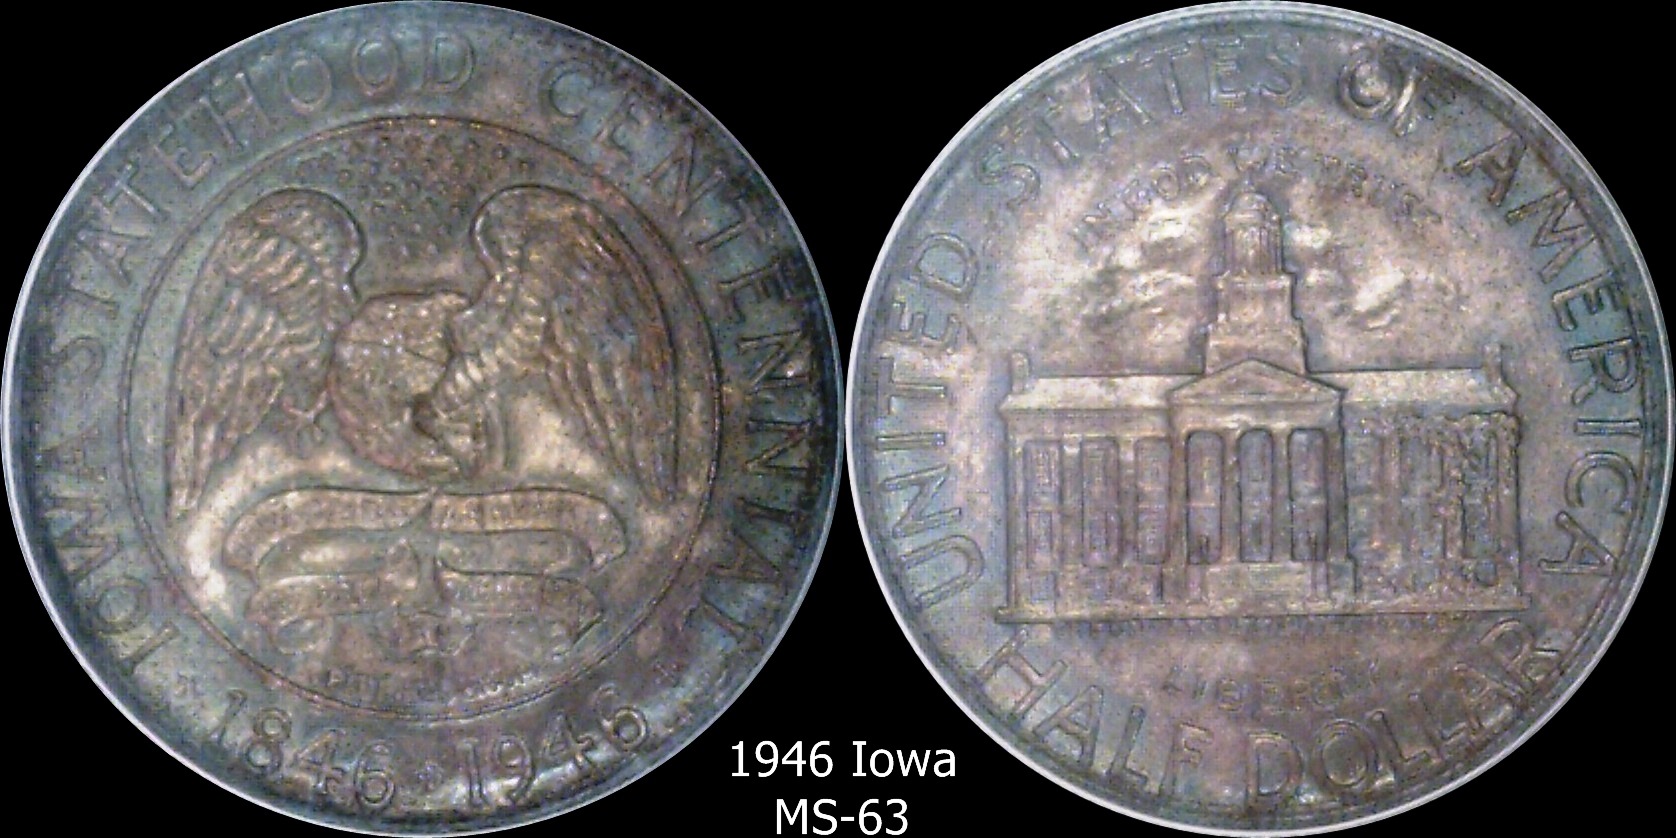 1846 1946 Iowa.jpg